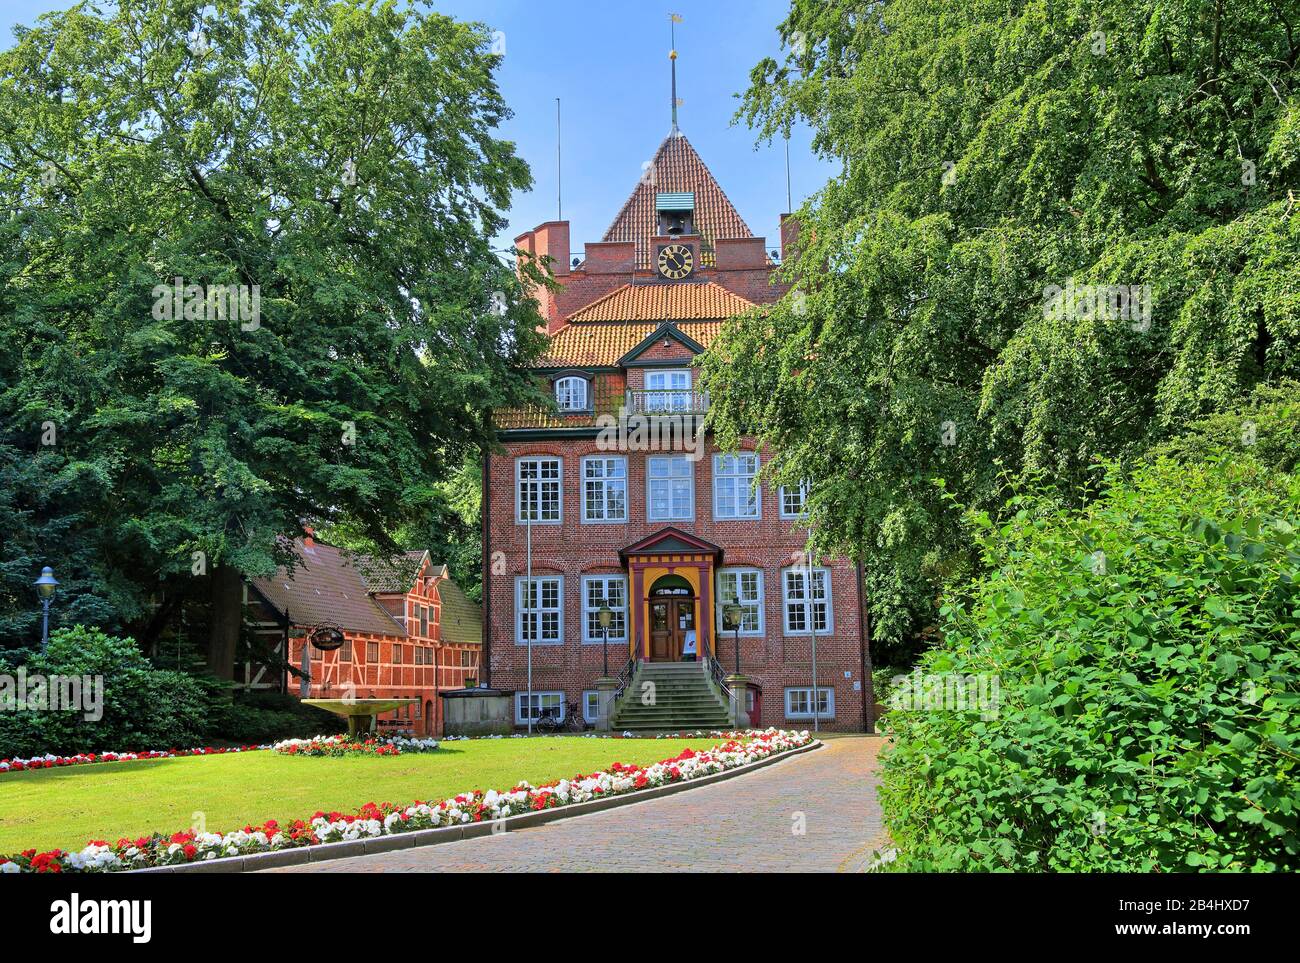 Schloss Ritzebüttel aux frontières fleuries, Nordseeheilbad Cuxhaven, estuaire d'Elbe, mer du Nord, côte de la mer du Nord, Basse-Saxe, Allemagne Banque D'Images